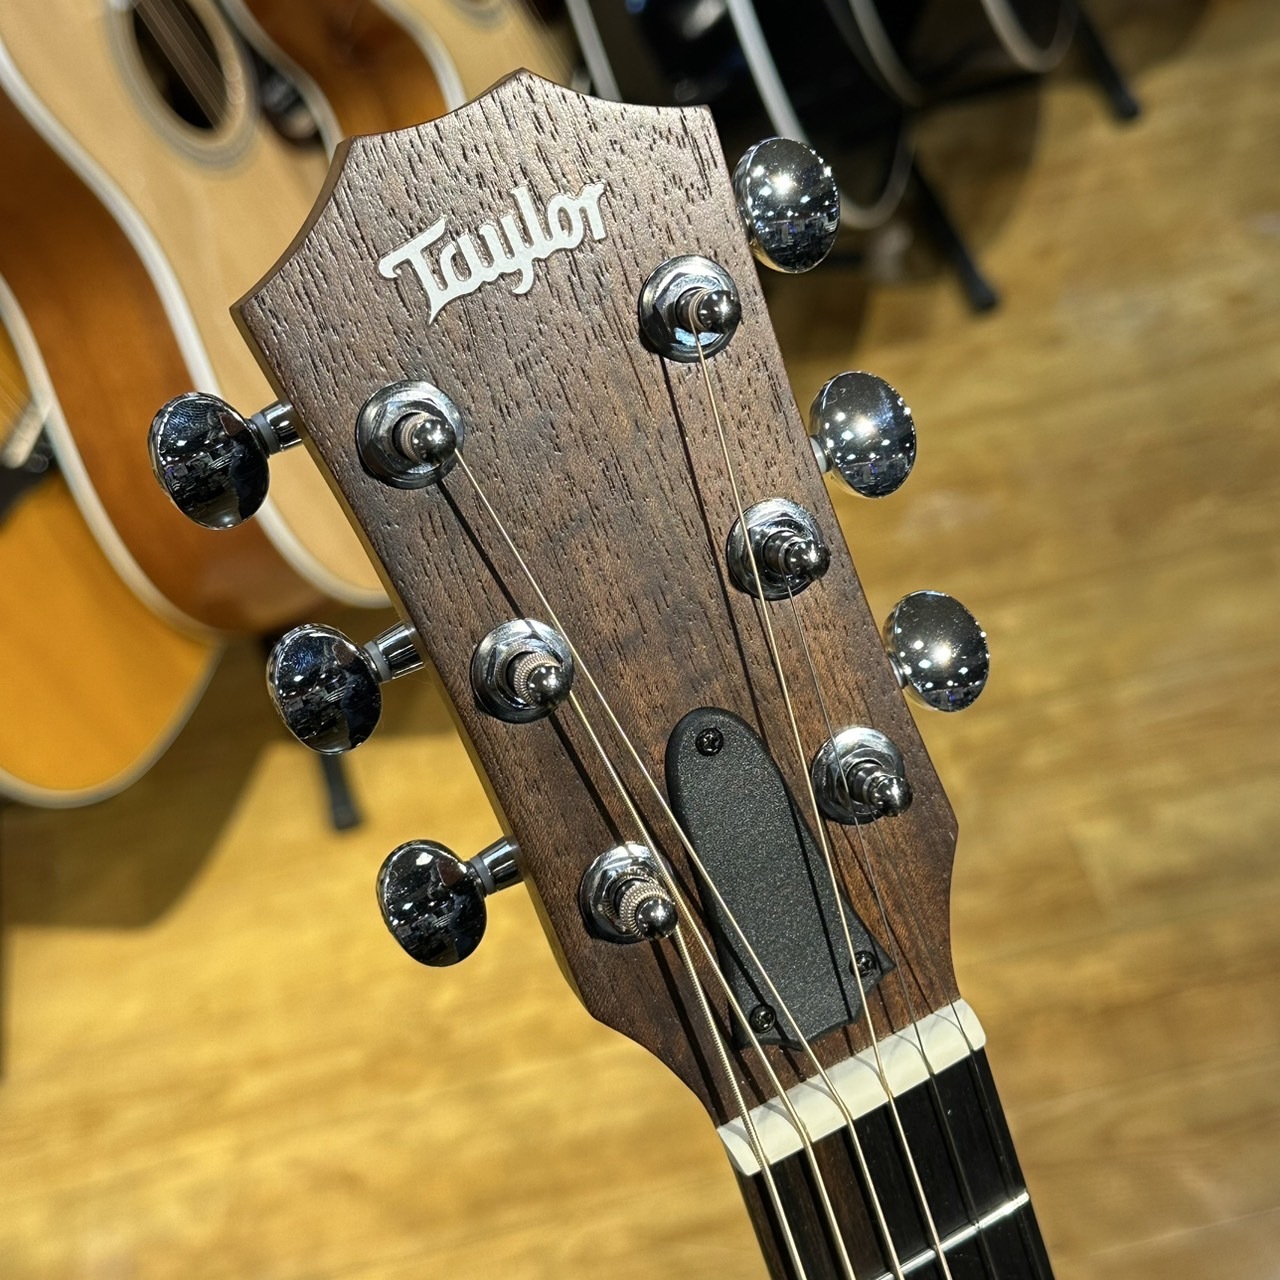 Taylor GS Mini Rosewood ミニアコースティックギター（B級特価/送料 